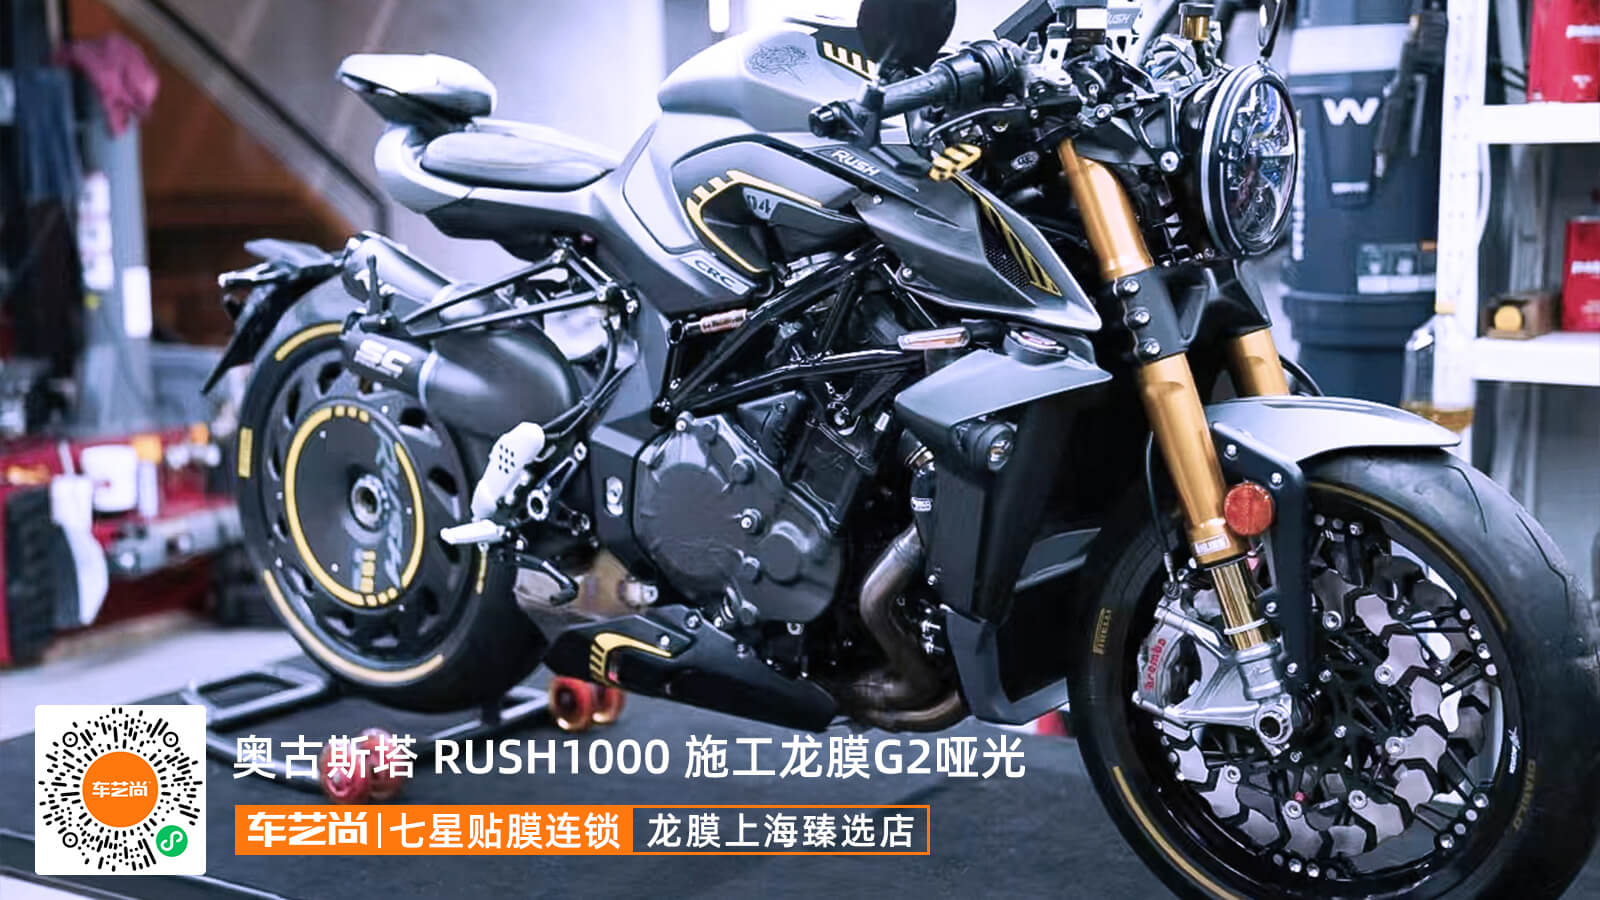 奥古斯塔限量版 RUSH1000上海装贴龙膜G2哑光隐形车衣汽车贴膜案例